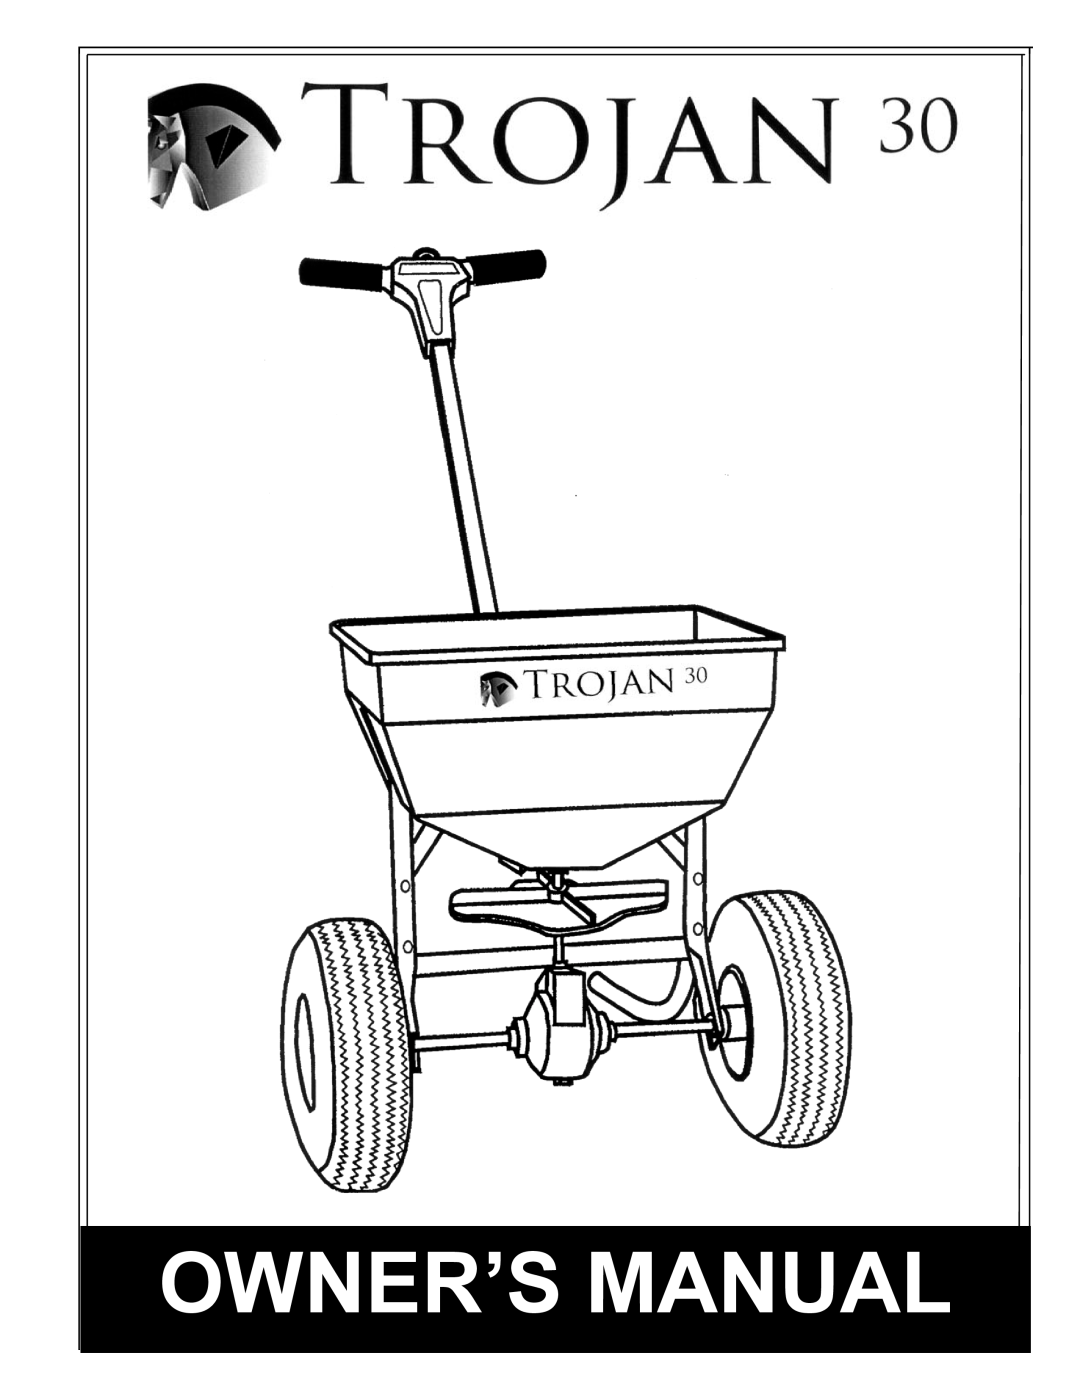 Trojan 30 owner manual 